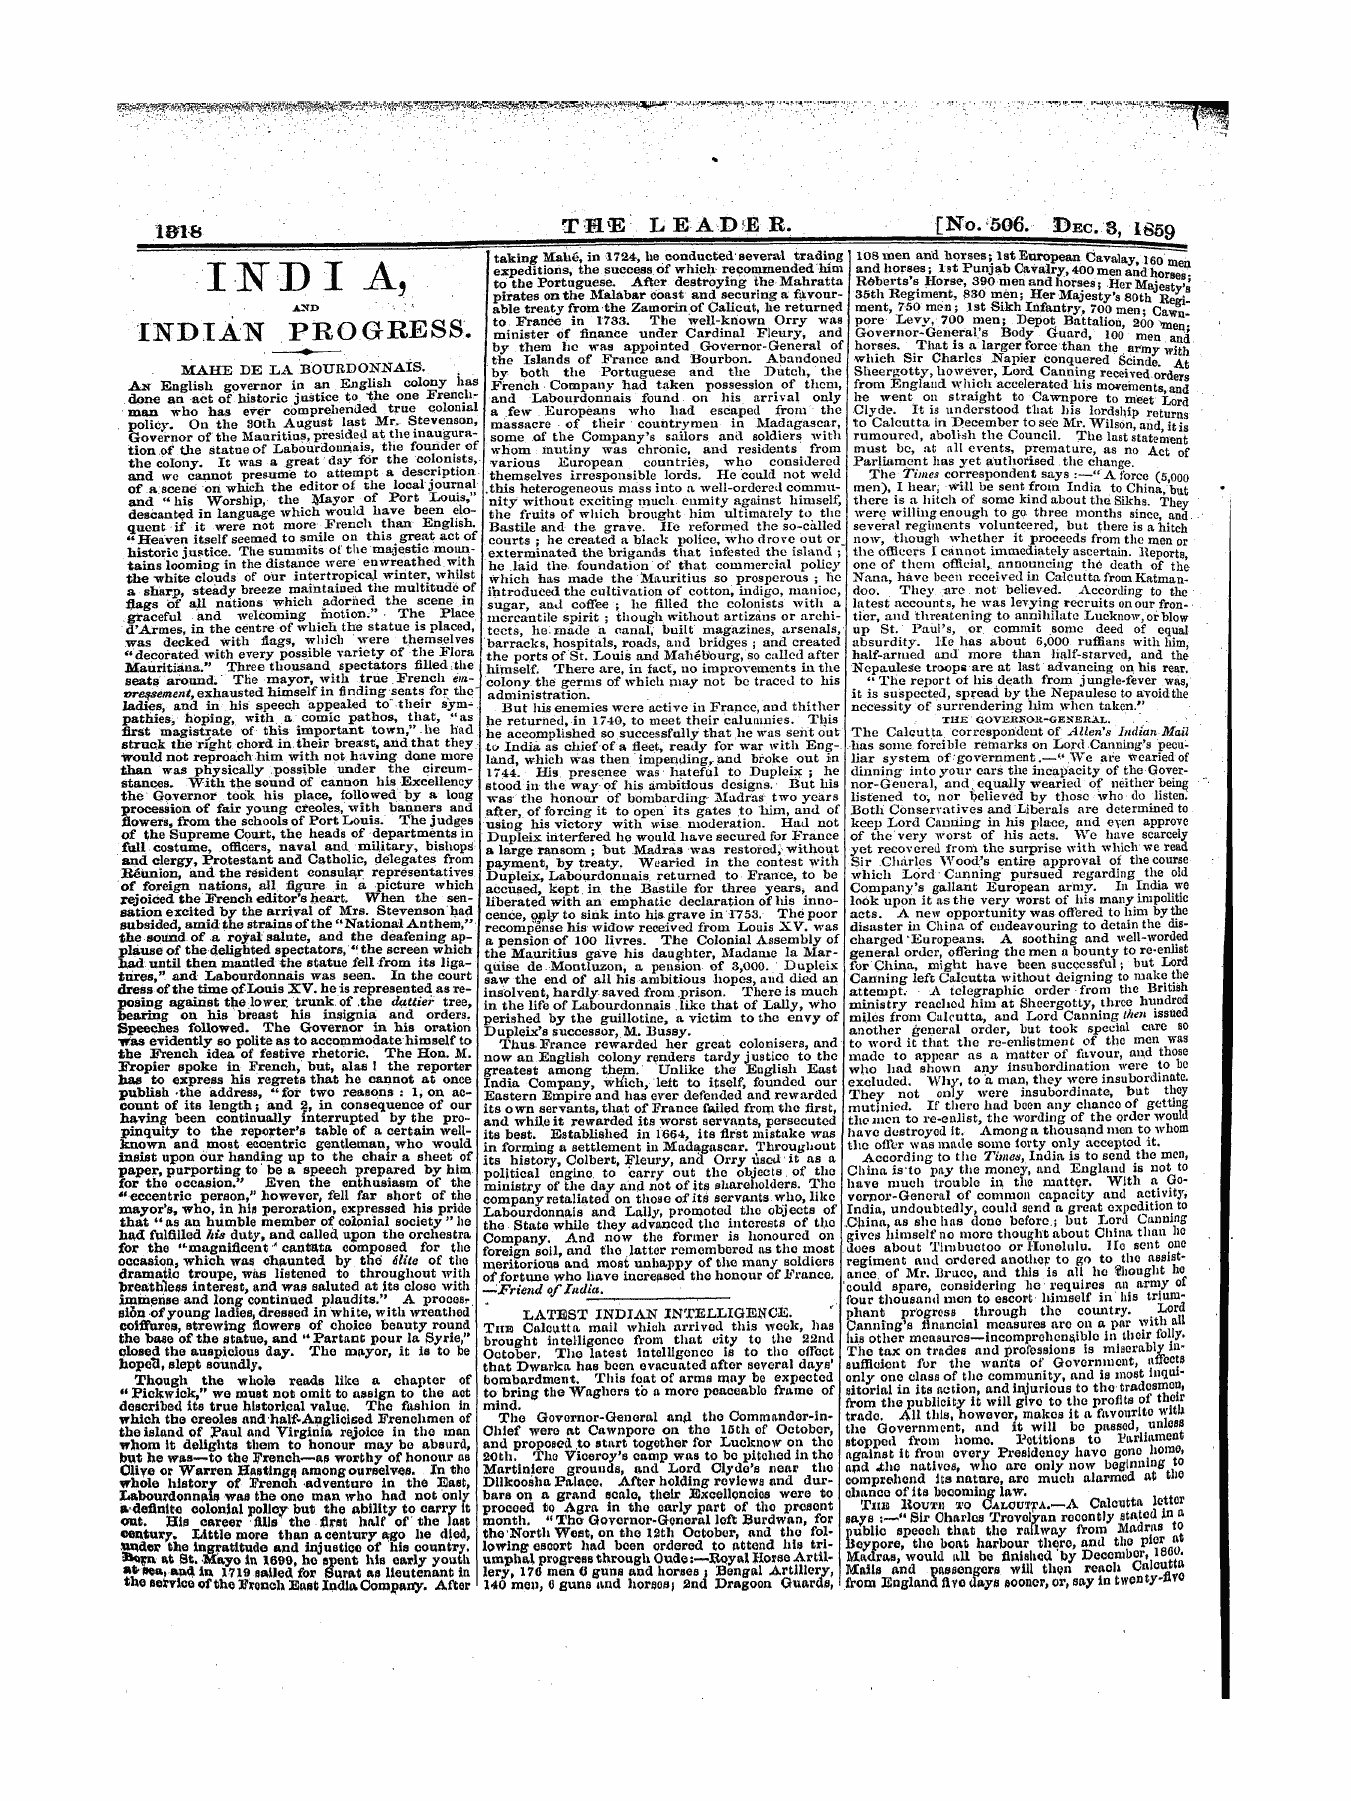 Leader (1850-1860): jS F Y, 1st edition - 11st D I A, Ikdian Progress.